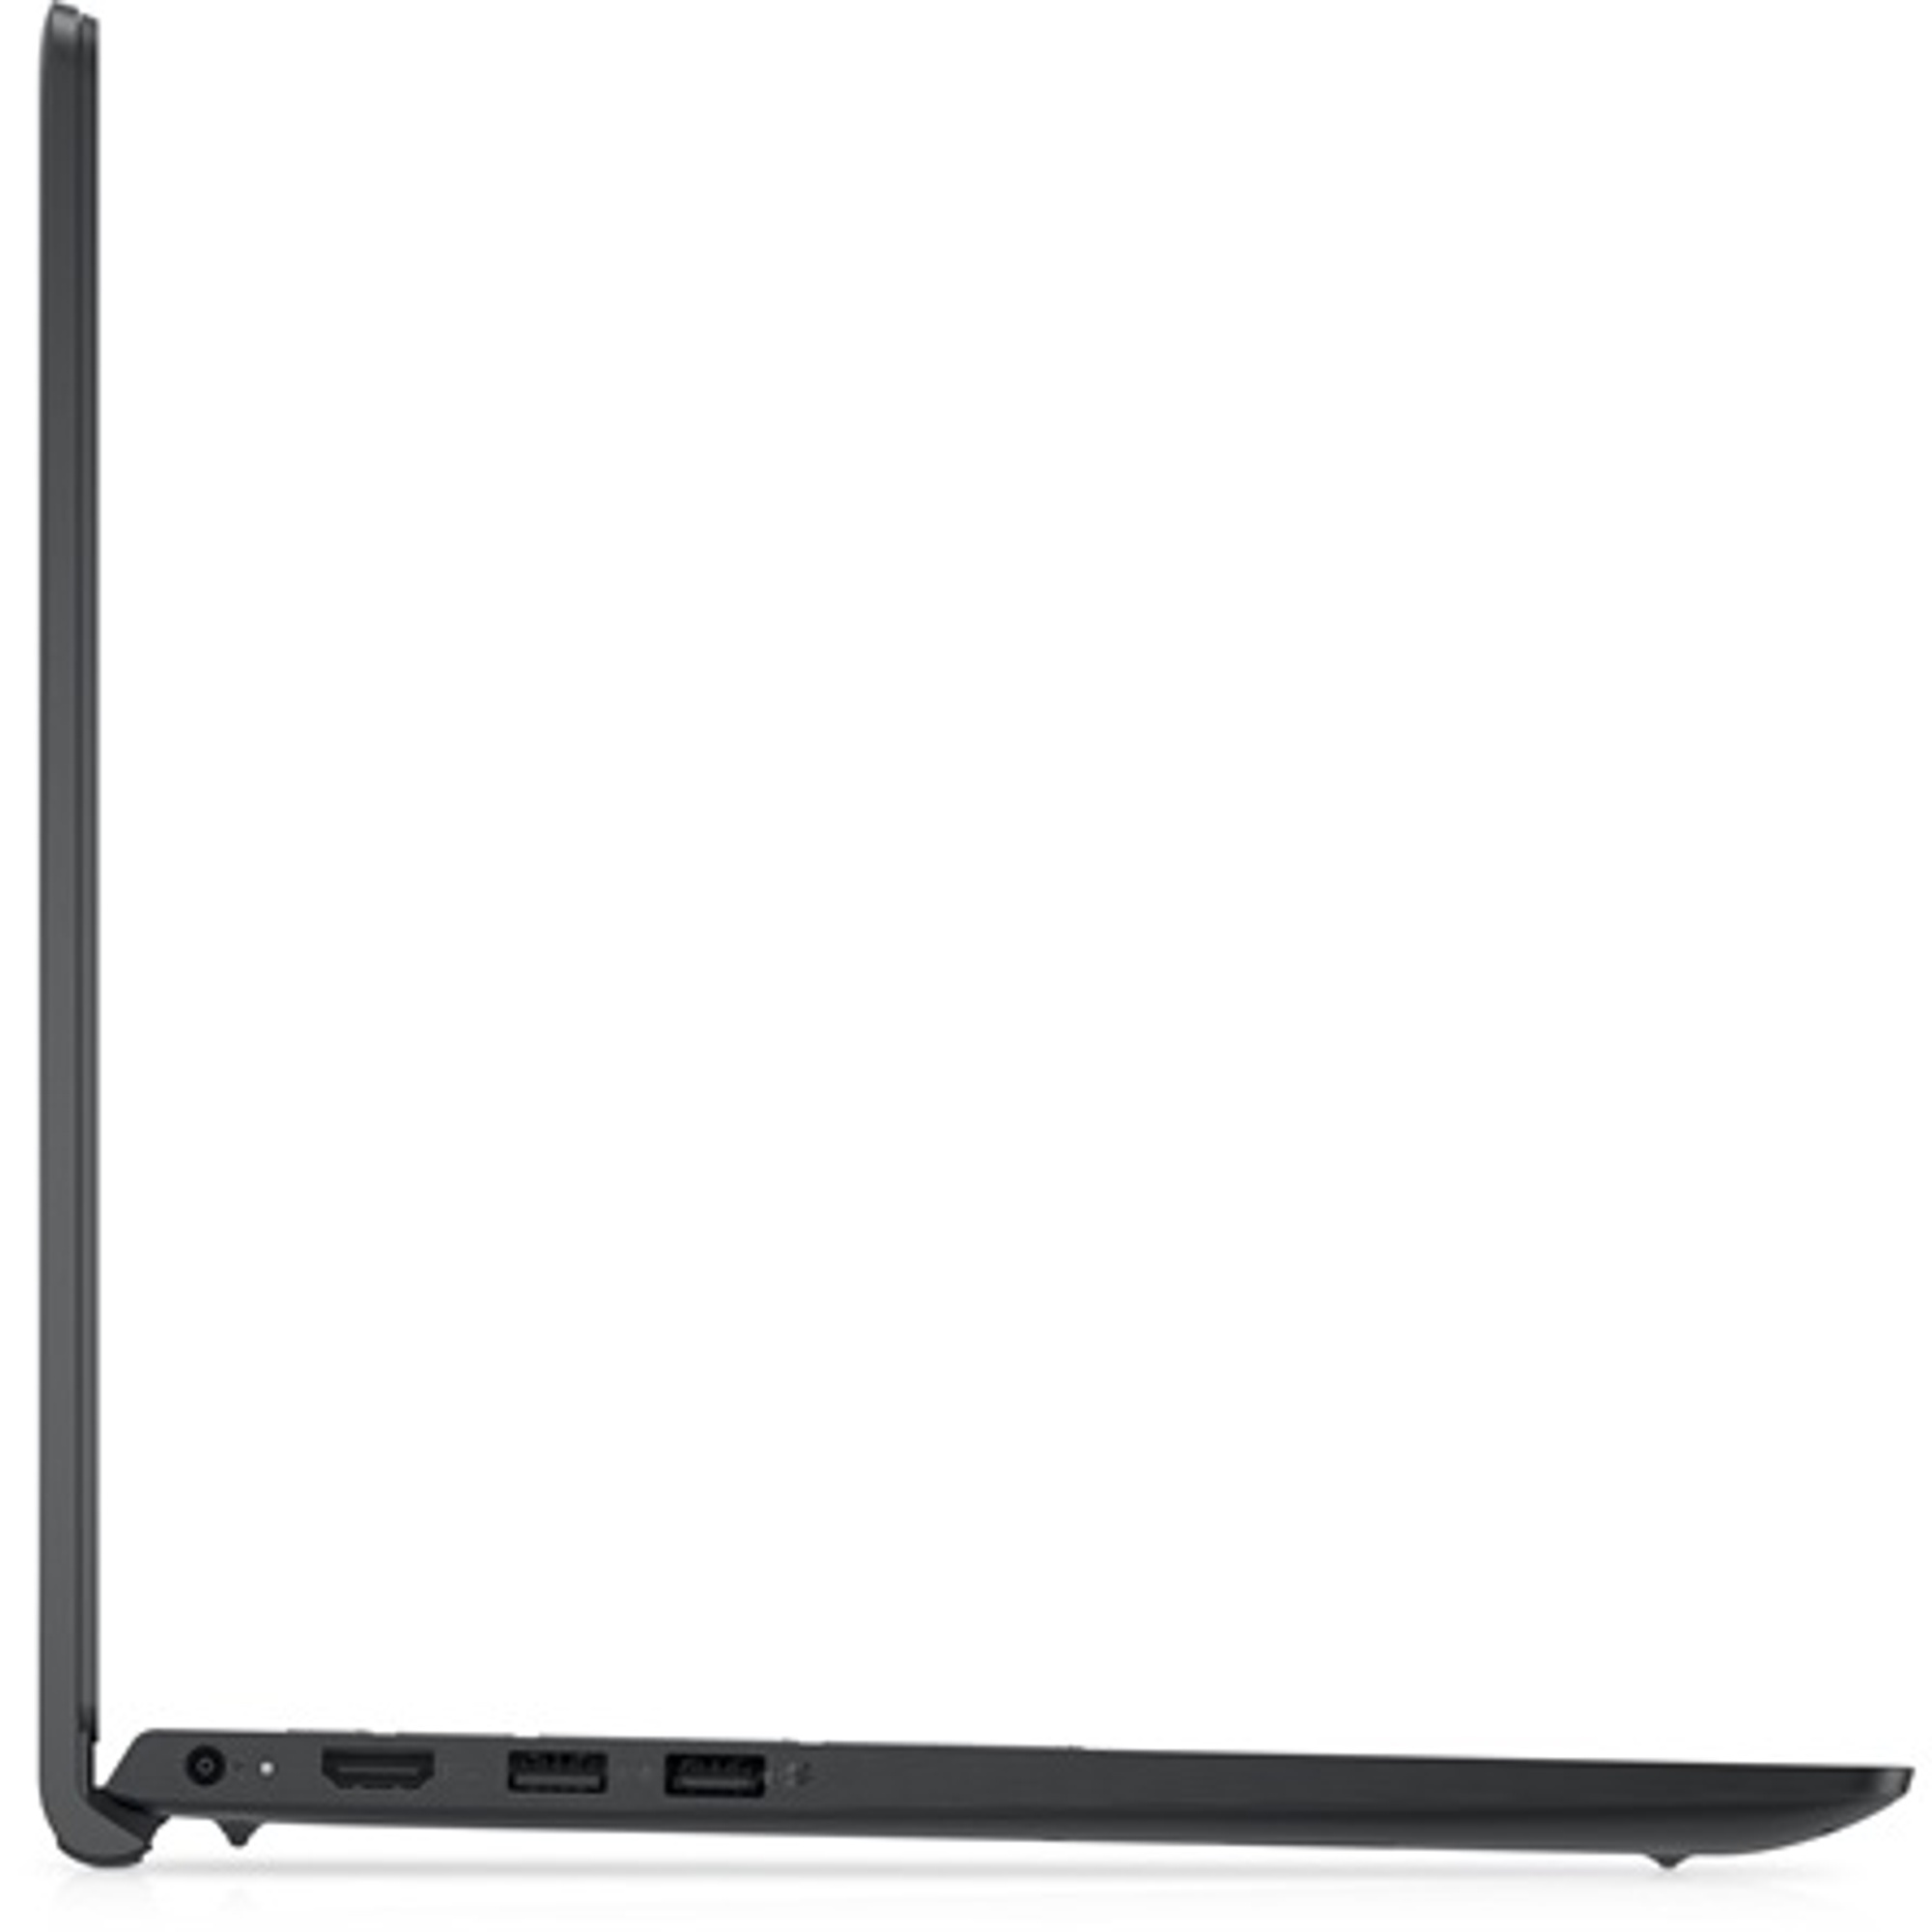 DELL V3520-14 Laptop / Notebook 3